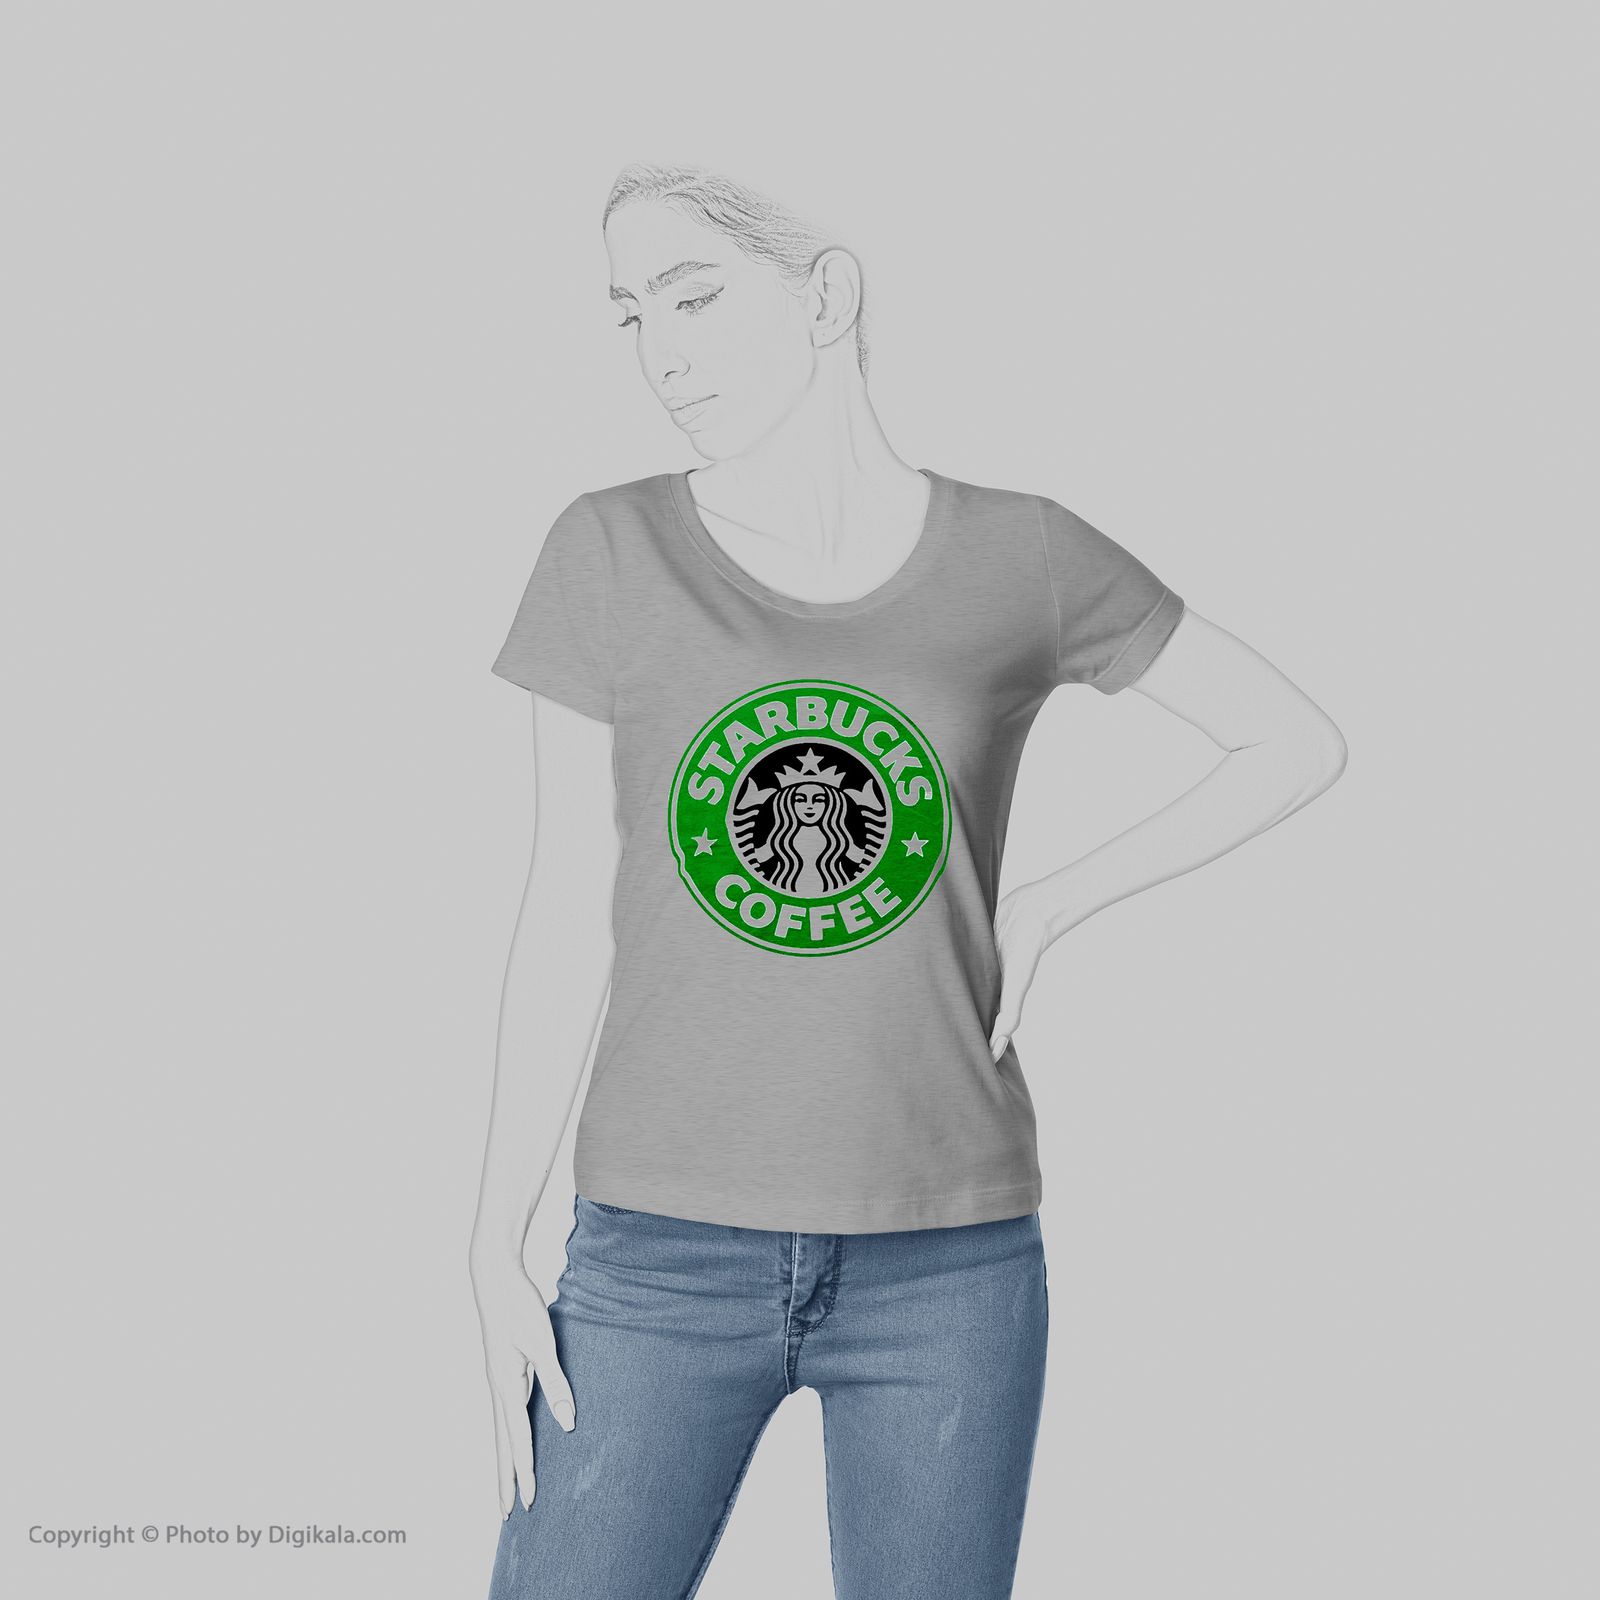 تی شرت به رسم طرح استارباکس کد 463 -  - 6